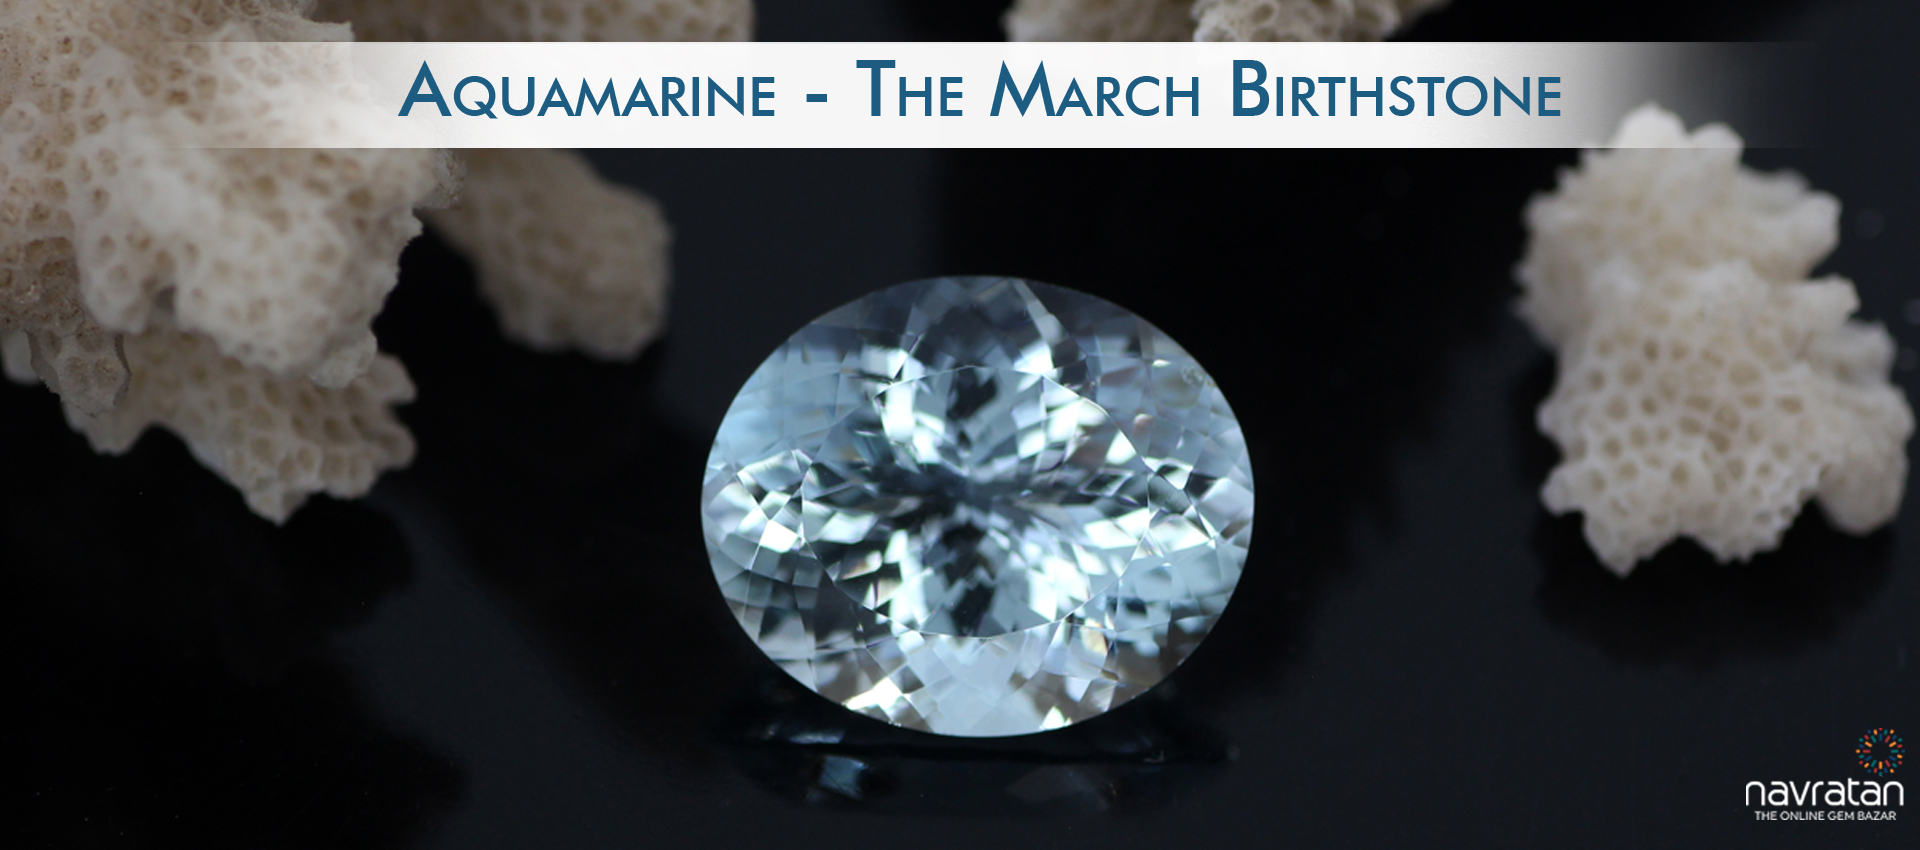 Aquamarine - The March Birthstone